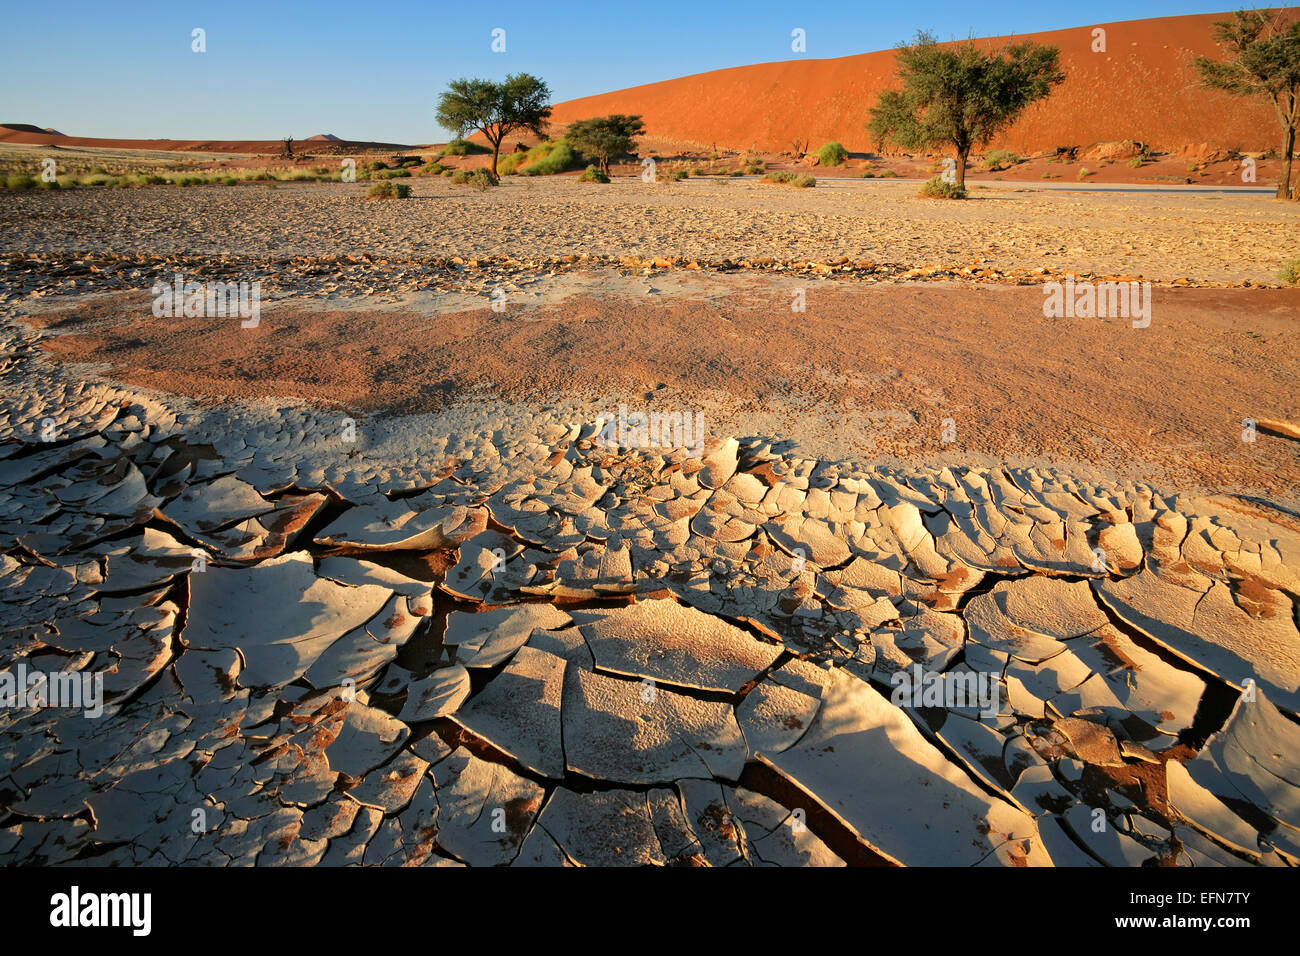 Paysage désertique avec de la boue craquelée, acacia arbres et dunes de sable rouge, Sossusvlei, Namibie Banque D'Images